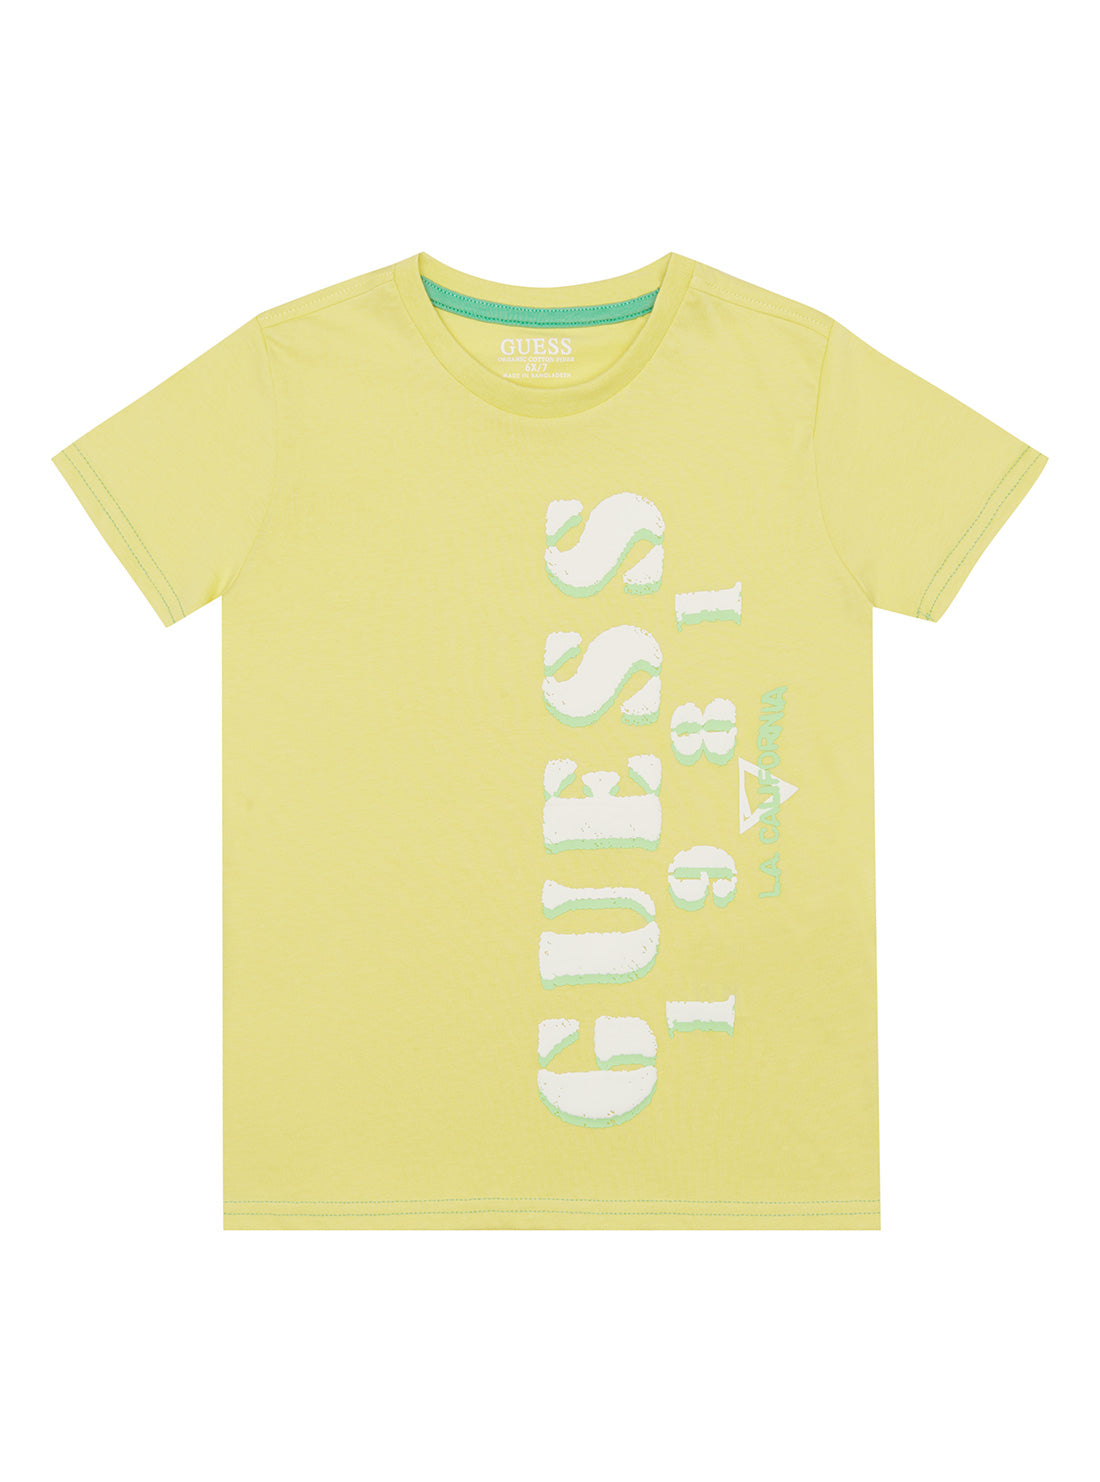 GUESS Little Boy Yellow Logo T-Shirt (2-7) N2GI15K8HM0 Front View